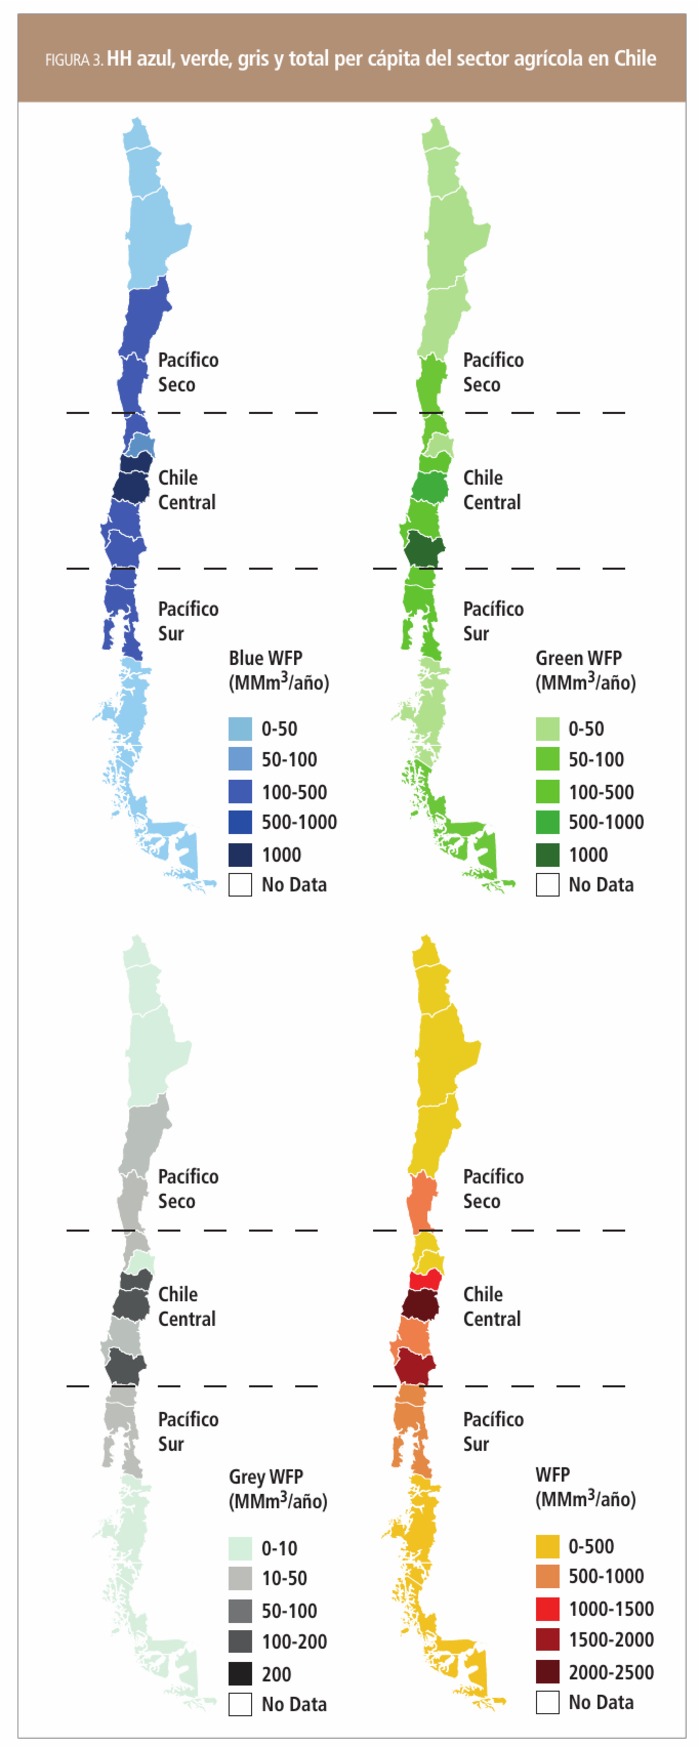 HH azul, verde, gris y total per cápita del sector agrícola en Chile